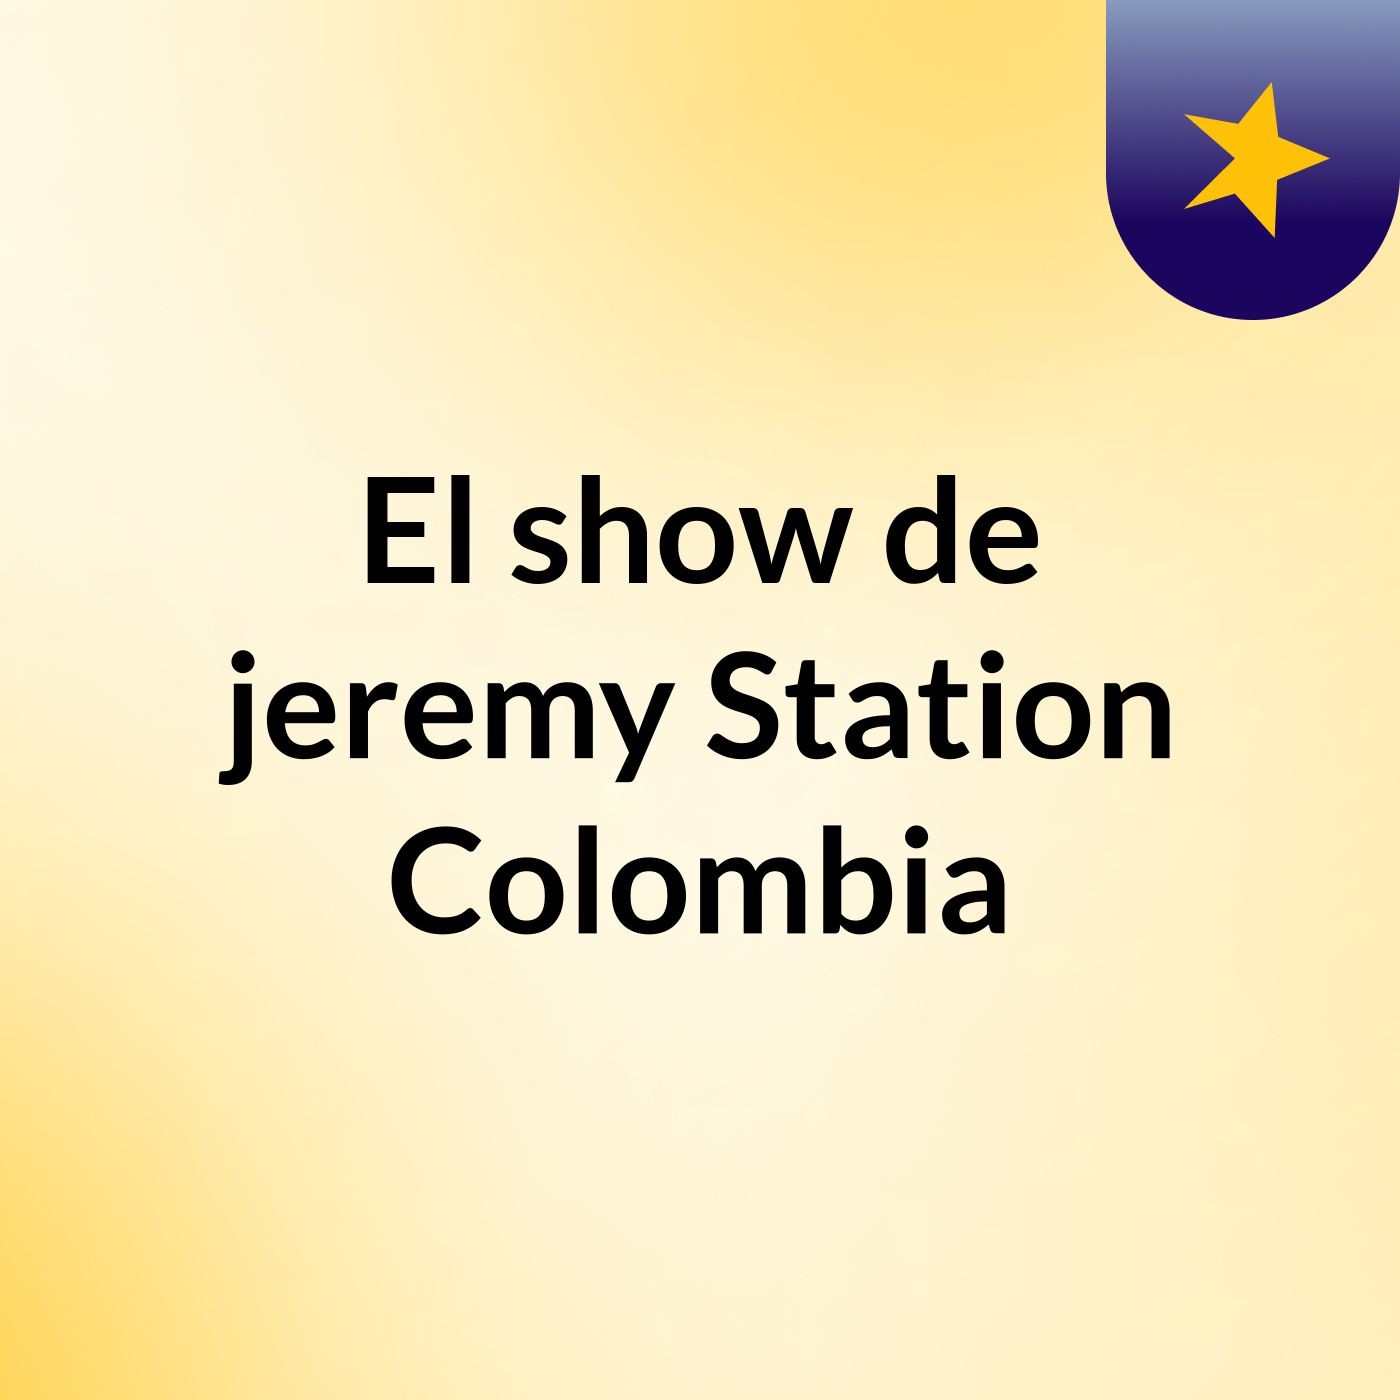 El show de jeremy Station Colombia